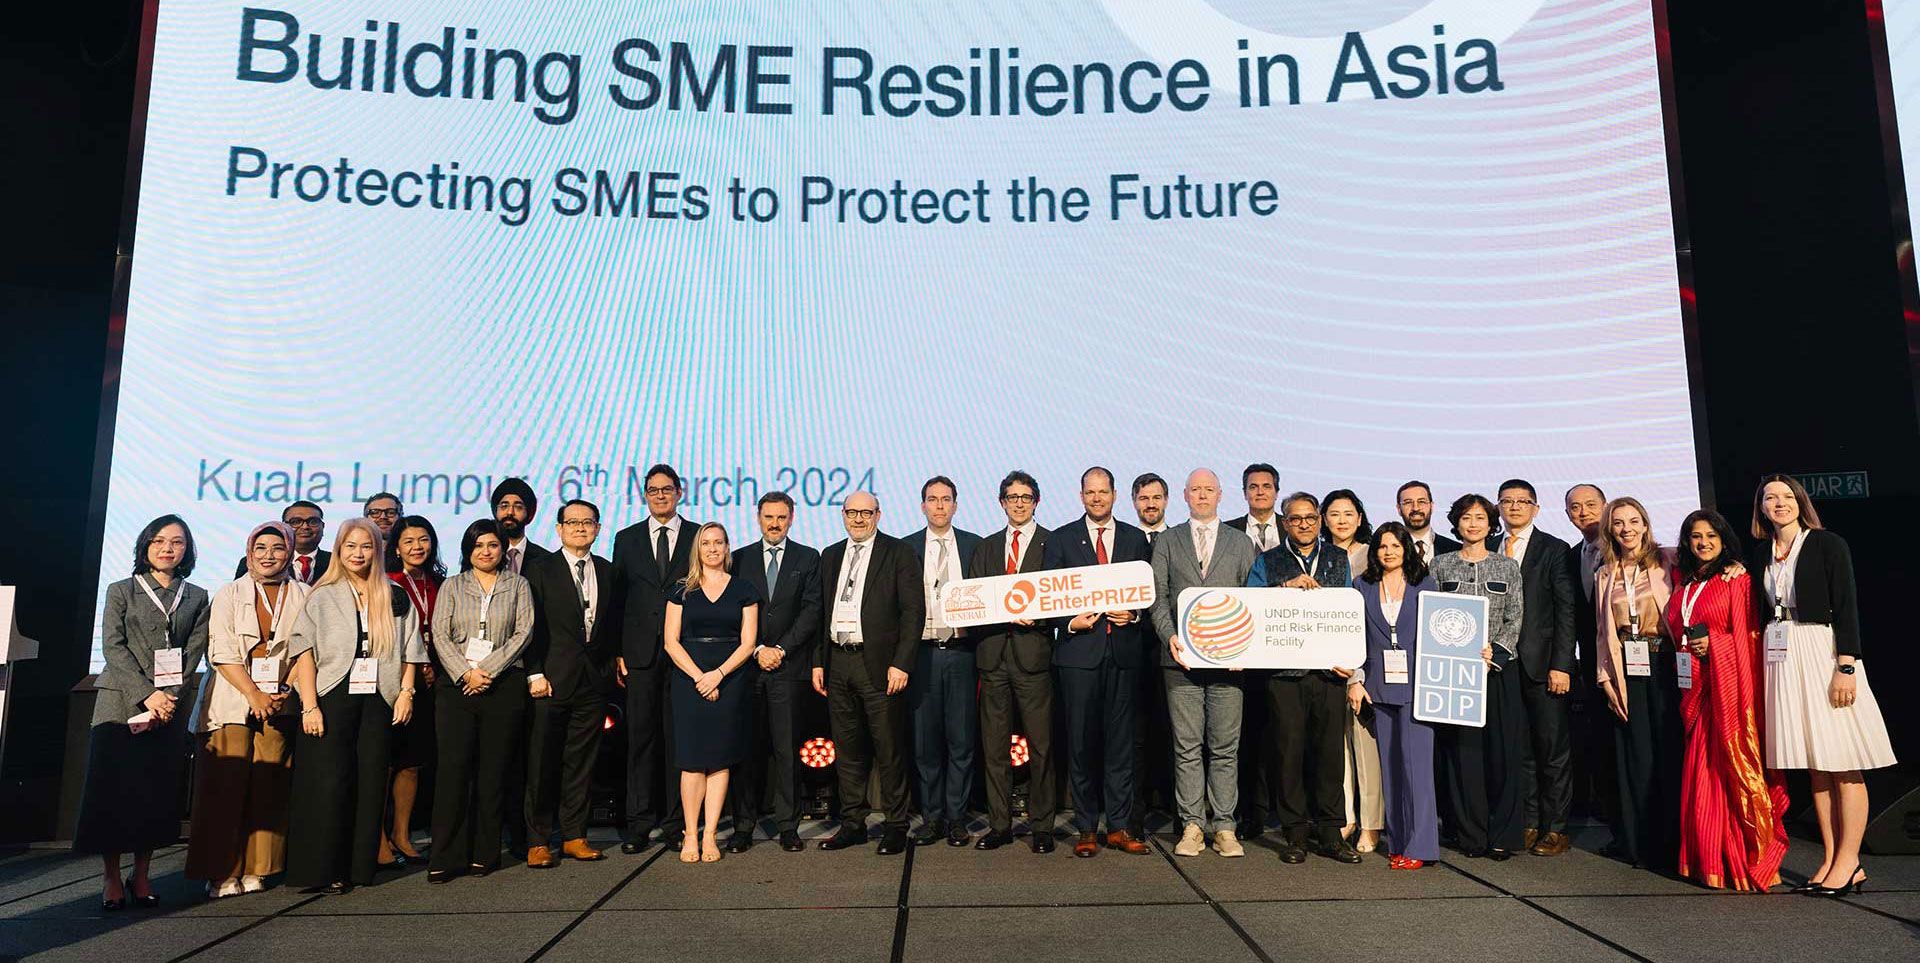 Immagini - Generali e UNDP promuovono la resilienza delle PMI in Asia